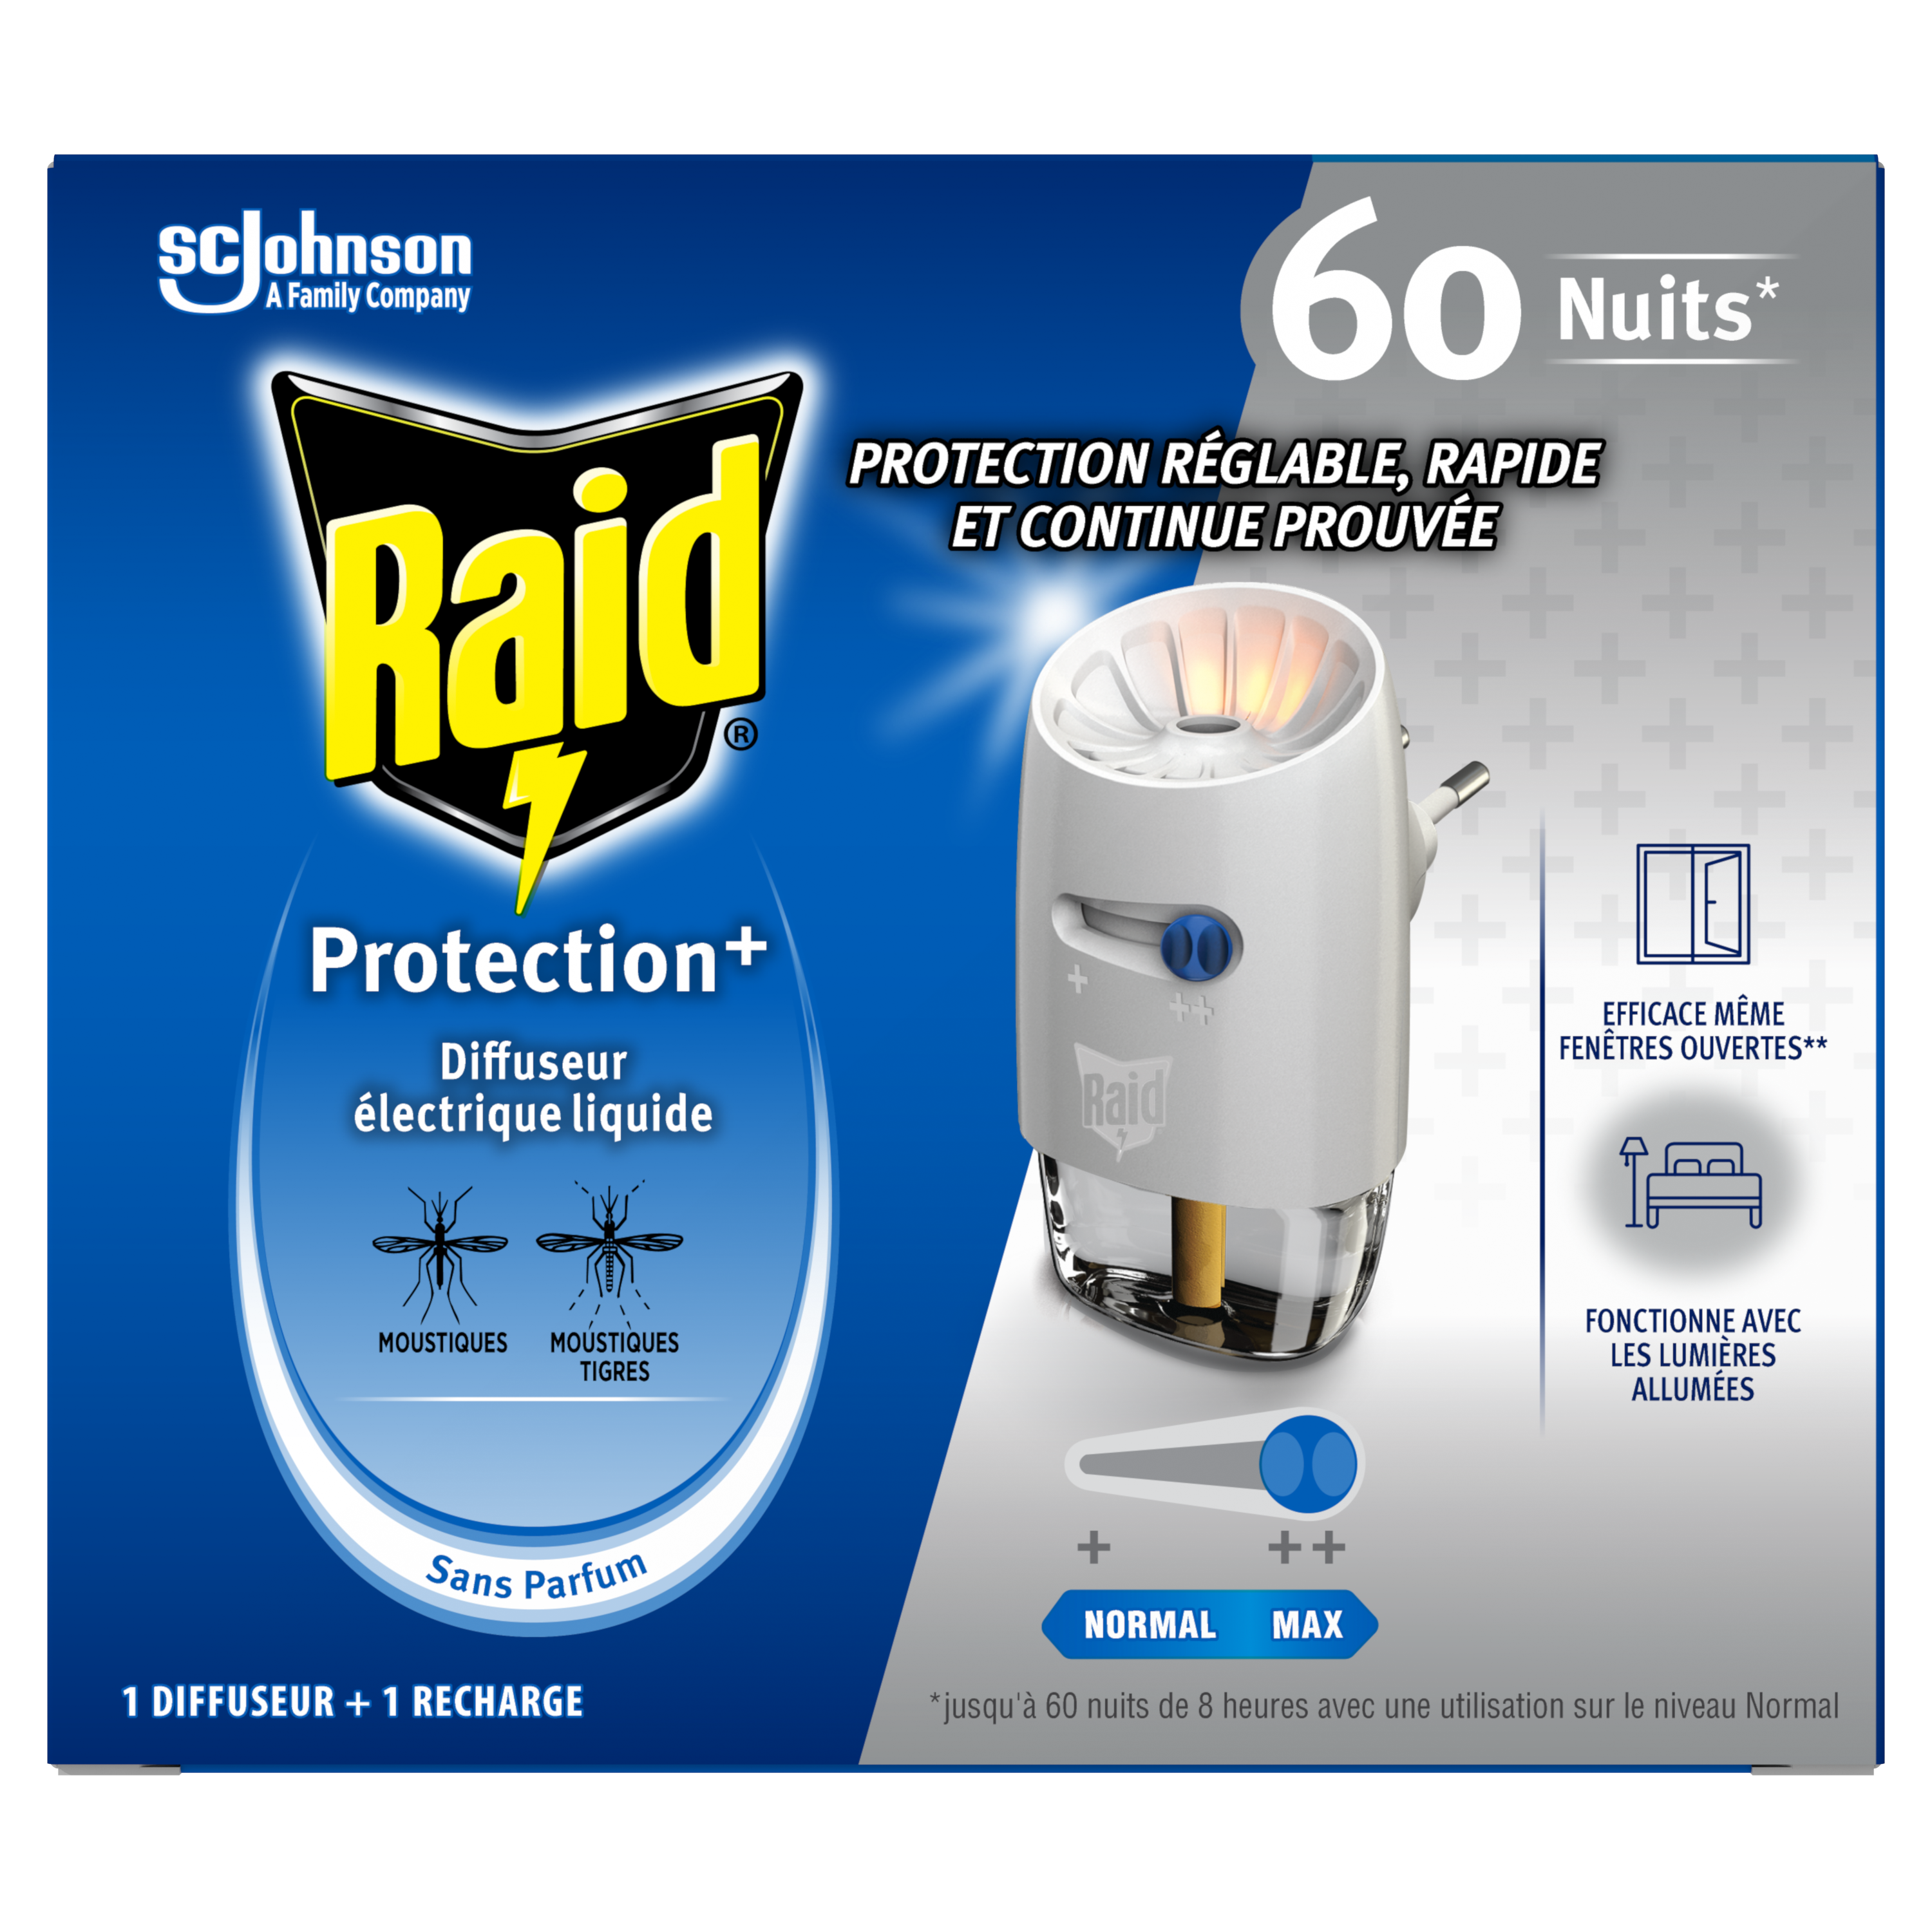 Prise électrique diffuseur anti-moustiques + 10 plaquettes et 10ml de  concentré, 80h de protection achat vente écologique - Acheter sur